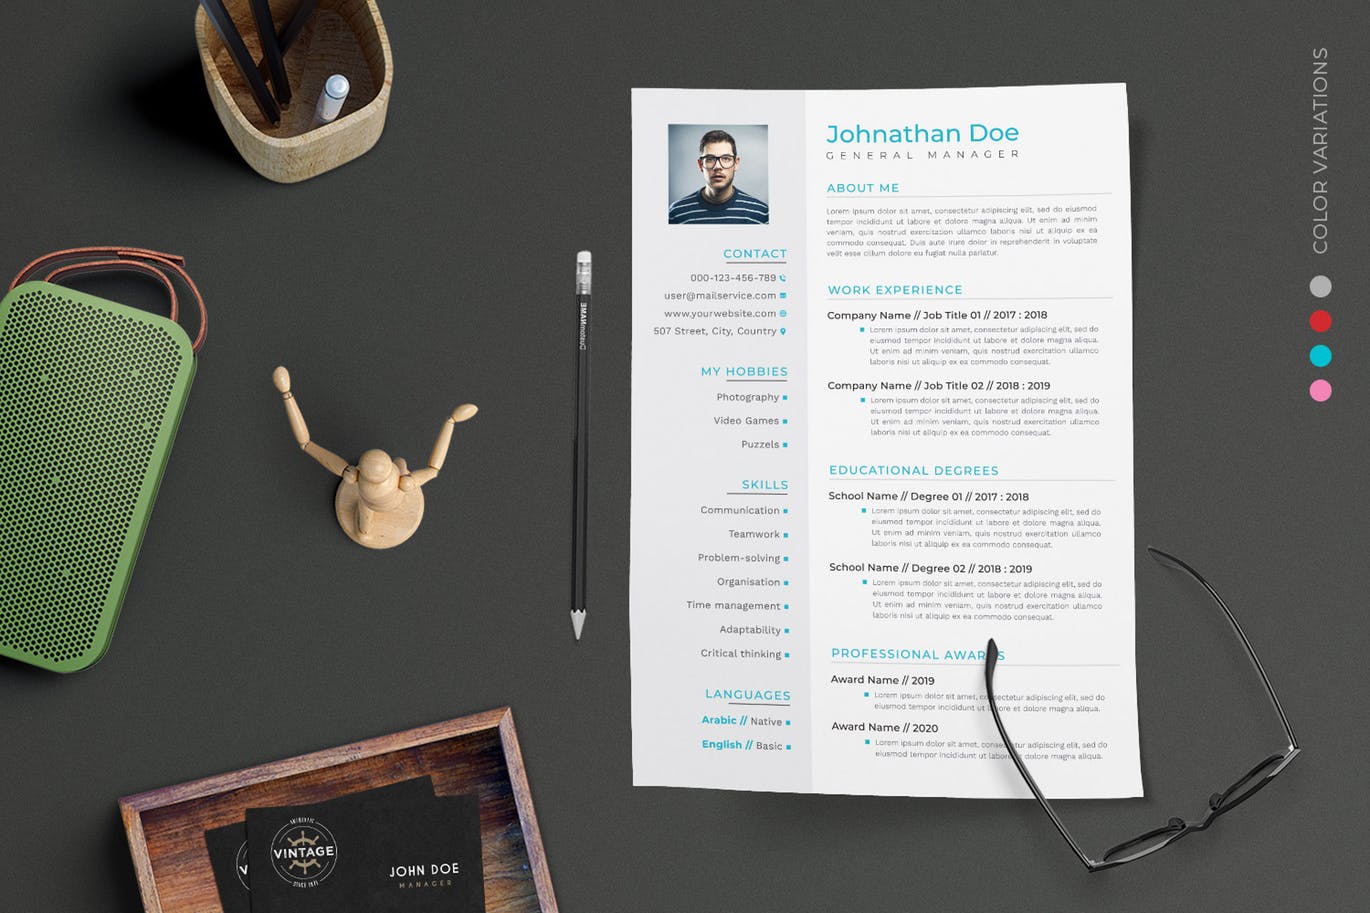 项目管理经理个人电子第一素材精选简历模板 CV Resume插图